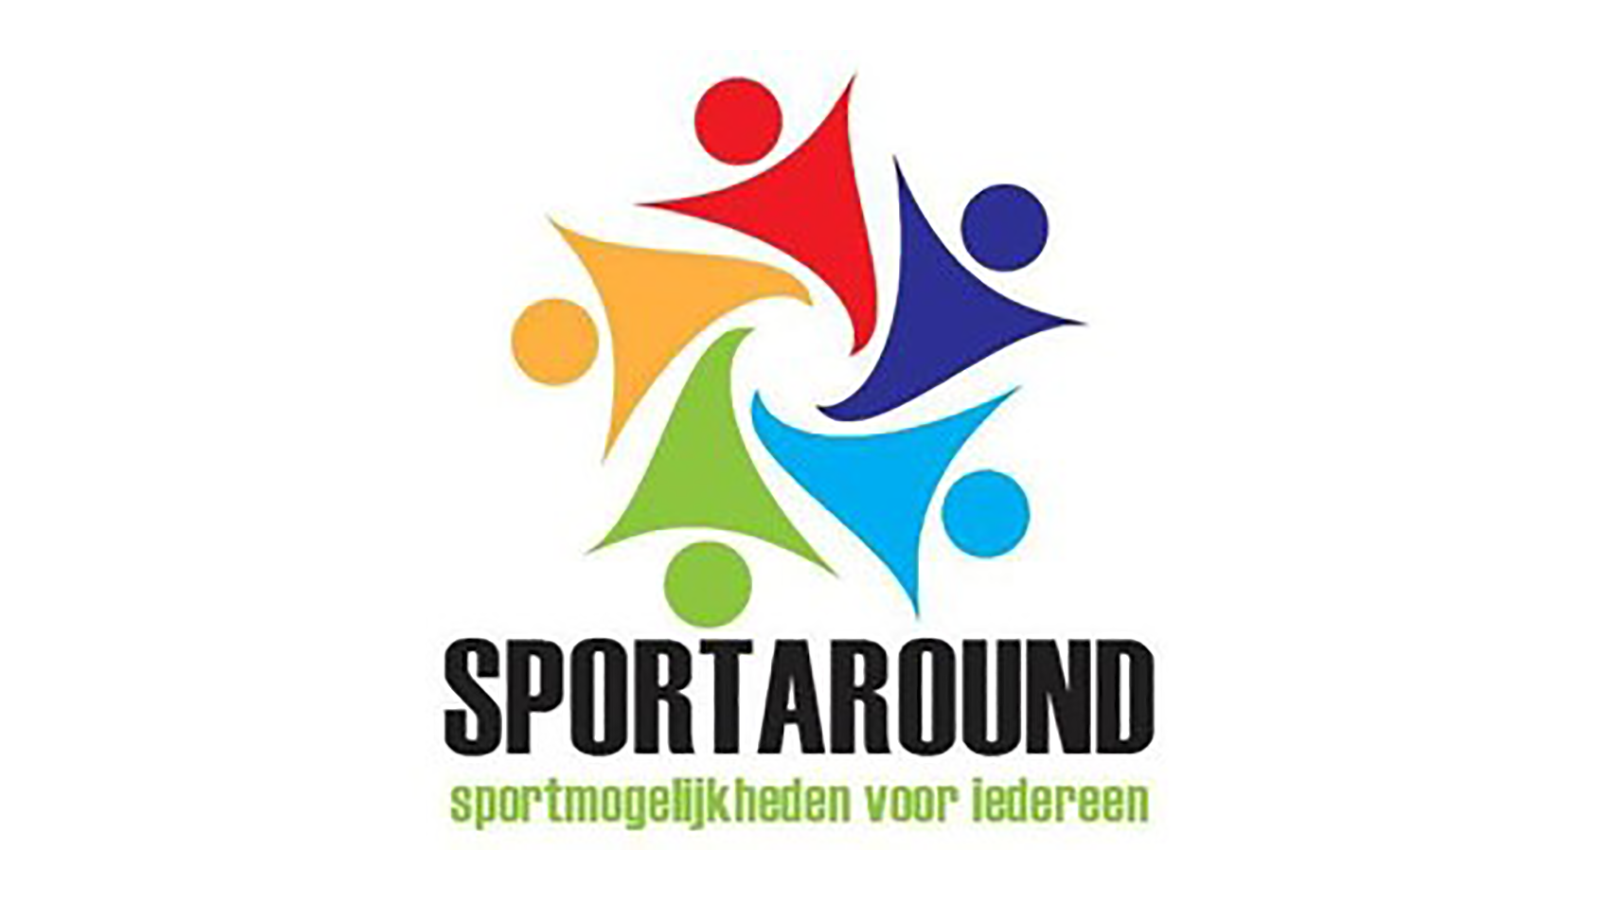 Sportoaround-news-gentmarathon